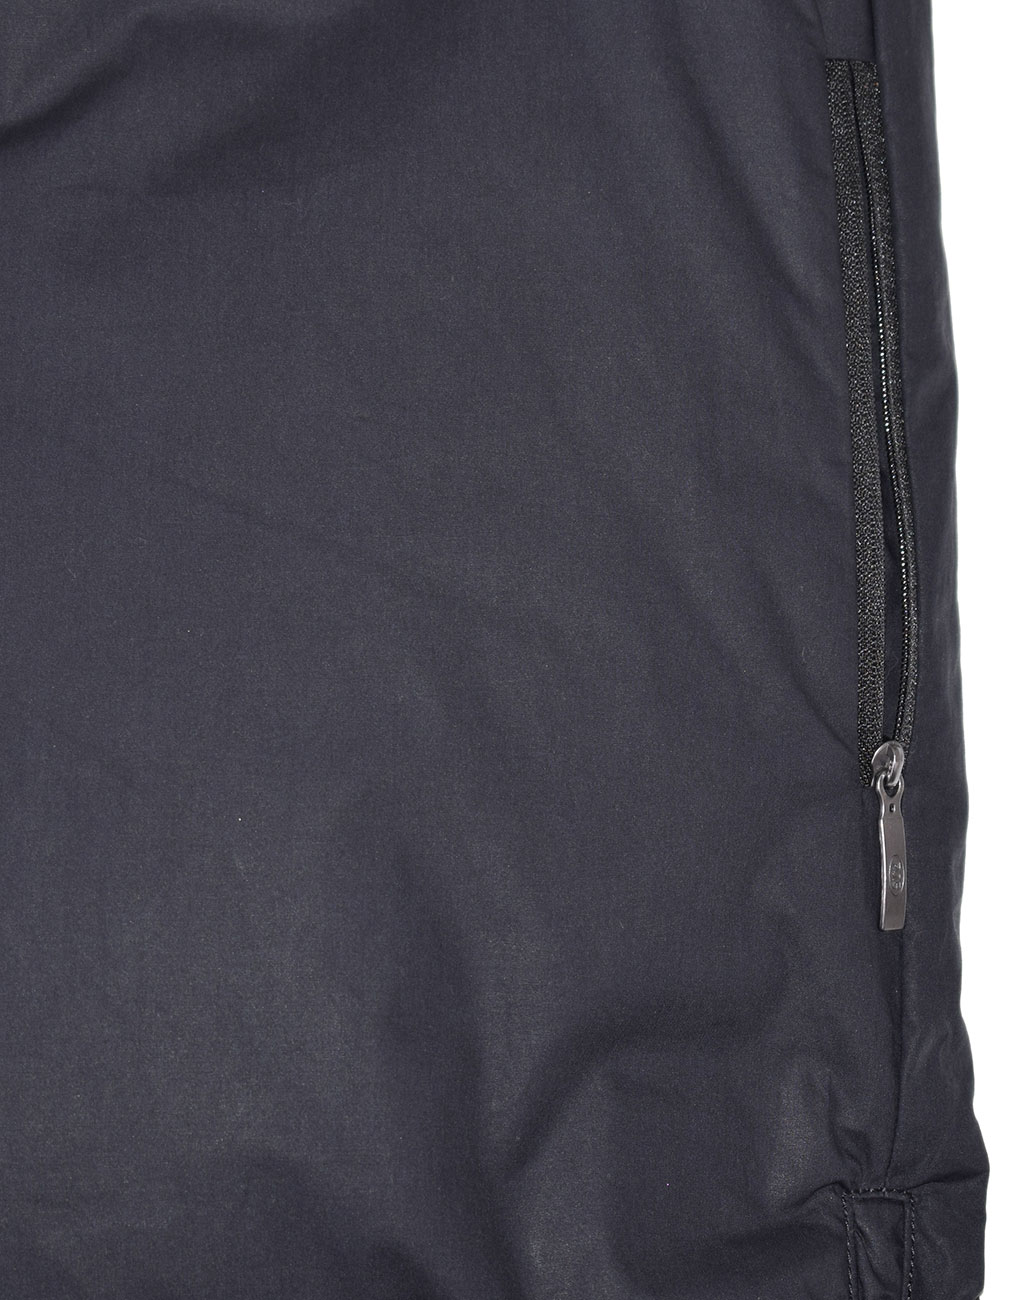 Женское пальто пуховое PARAJUMPERS SLEEPING BAG двустороннее FW 19/20 pencil 